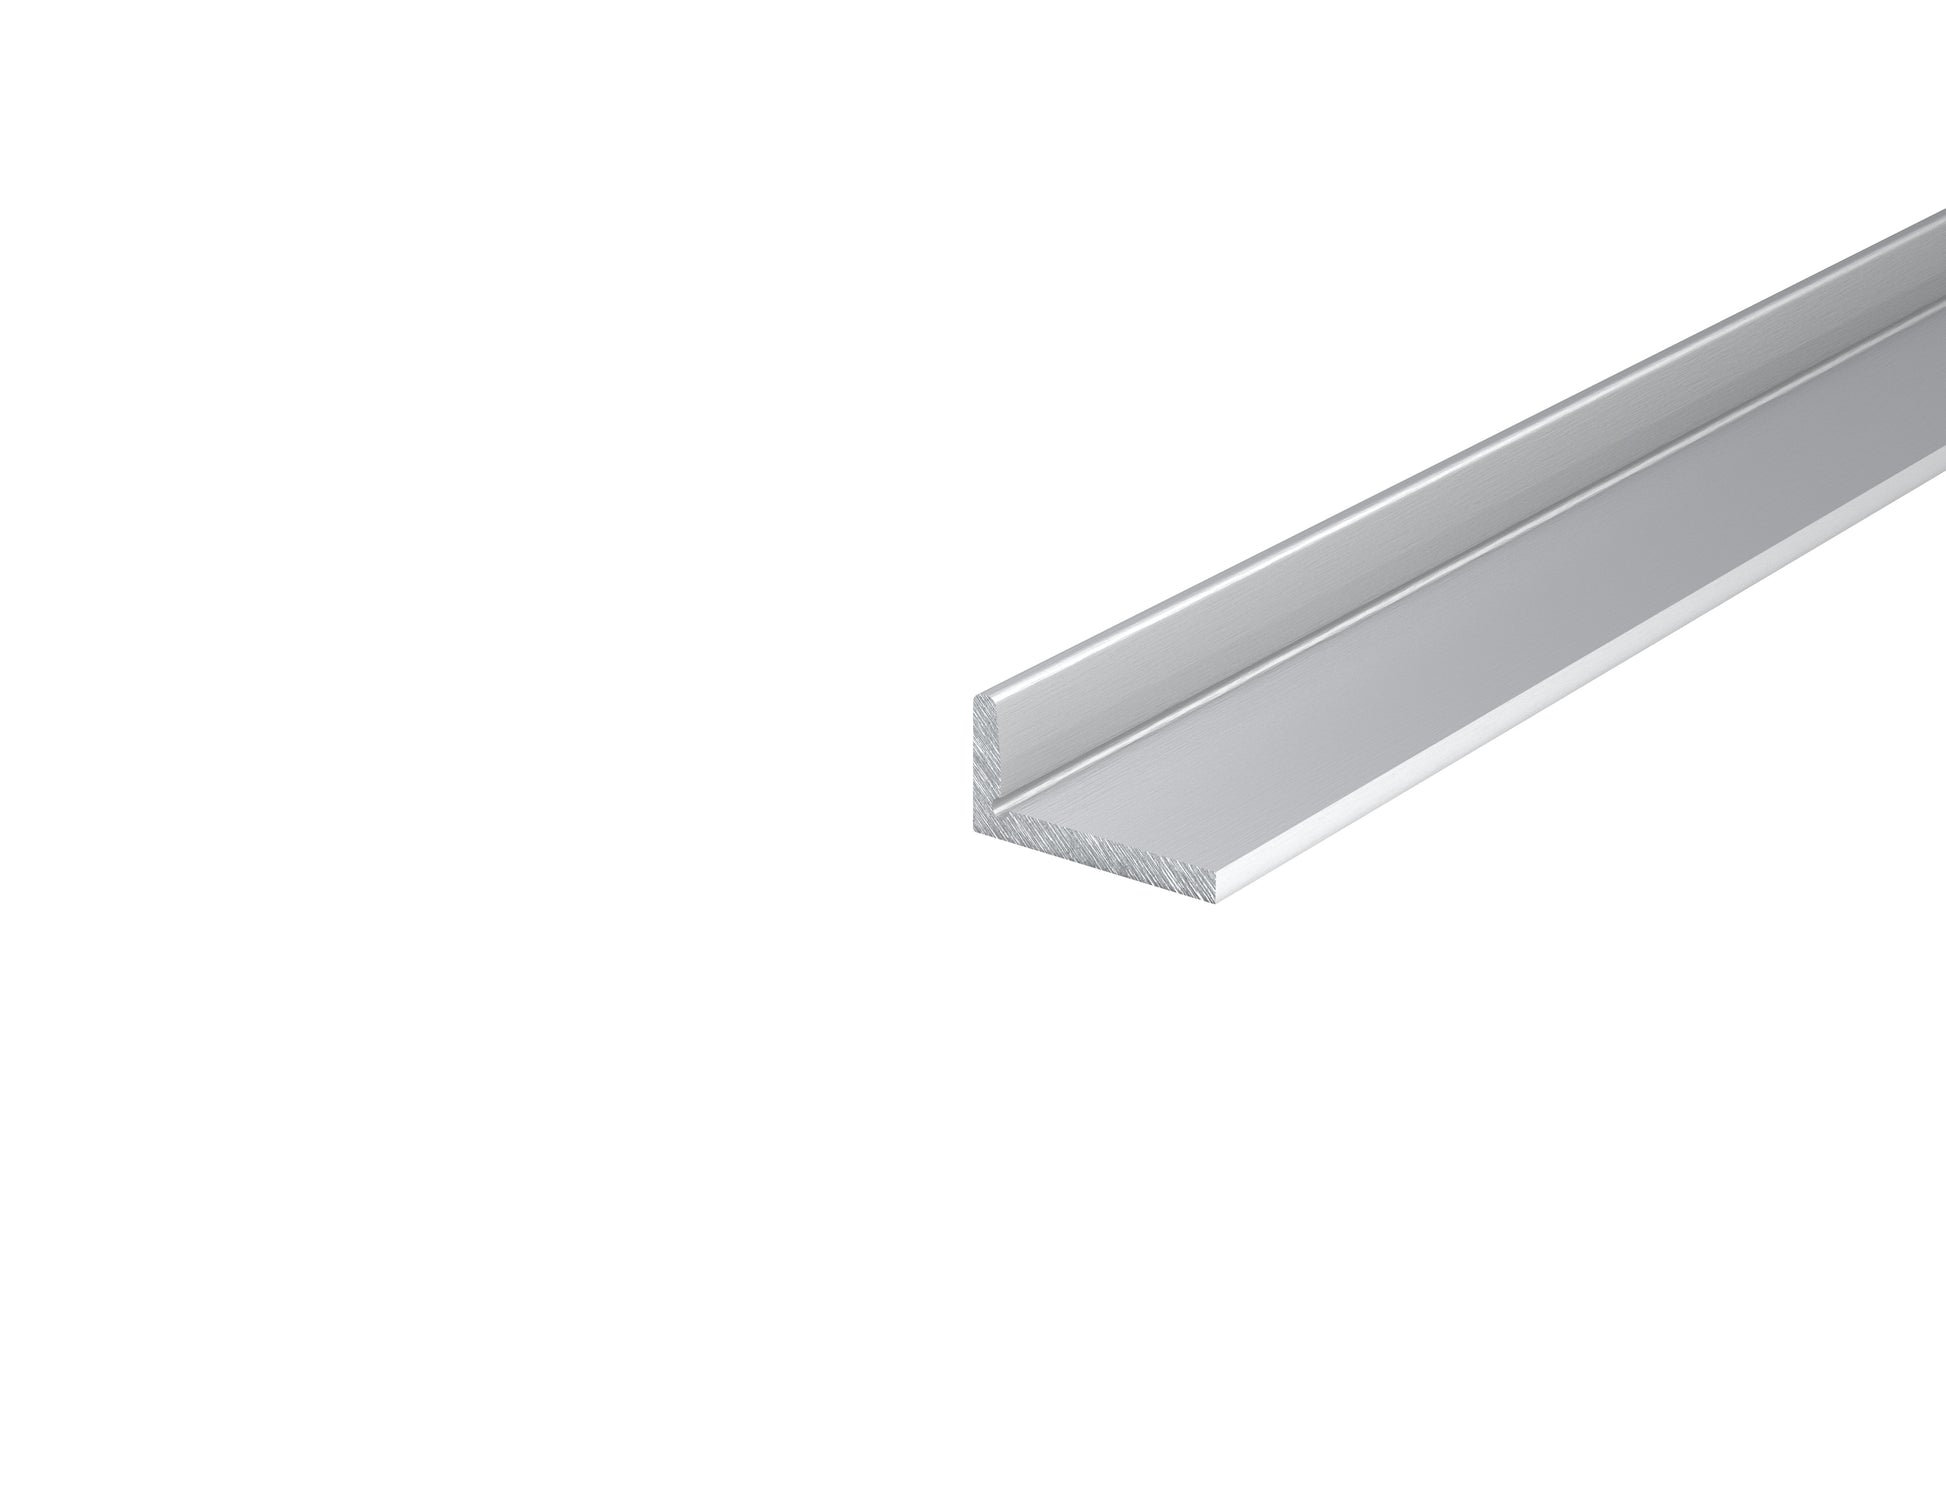 7/8" x 1-3/4" Aluminum corner extrusion cut to length